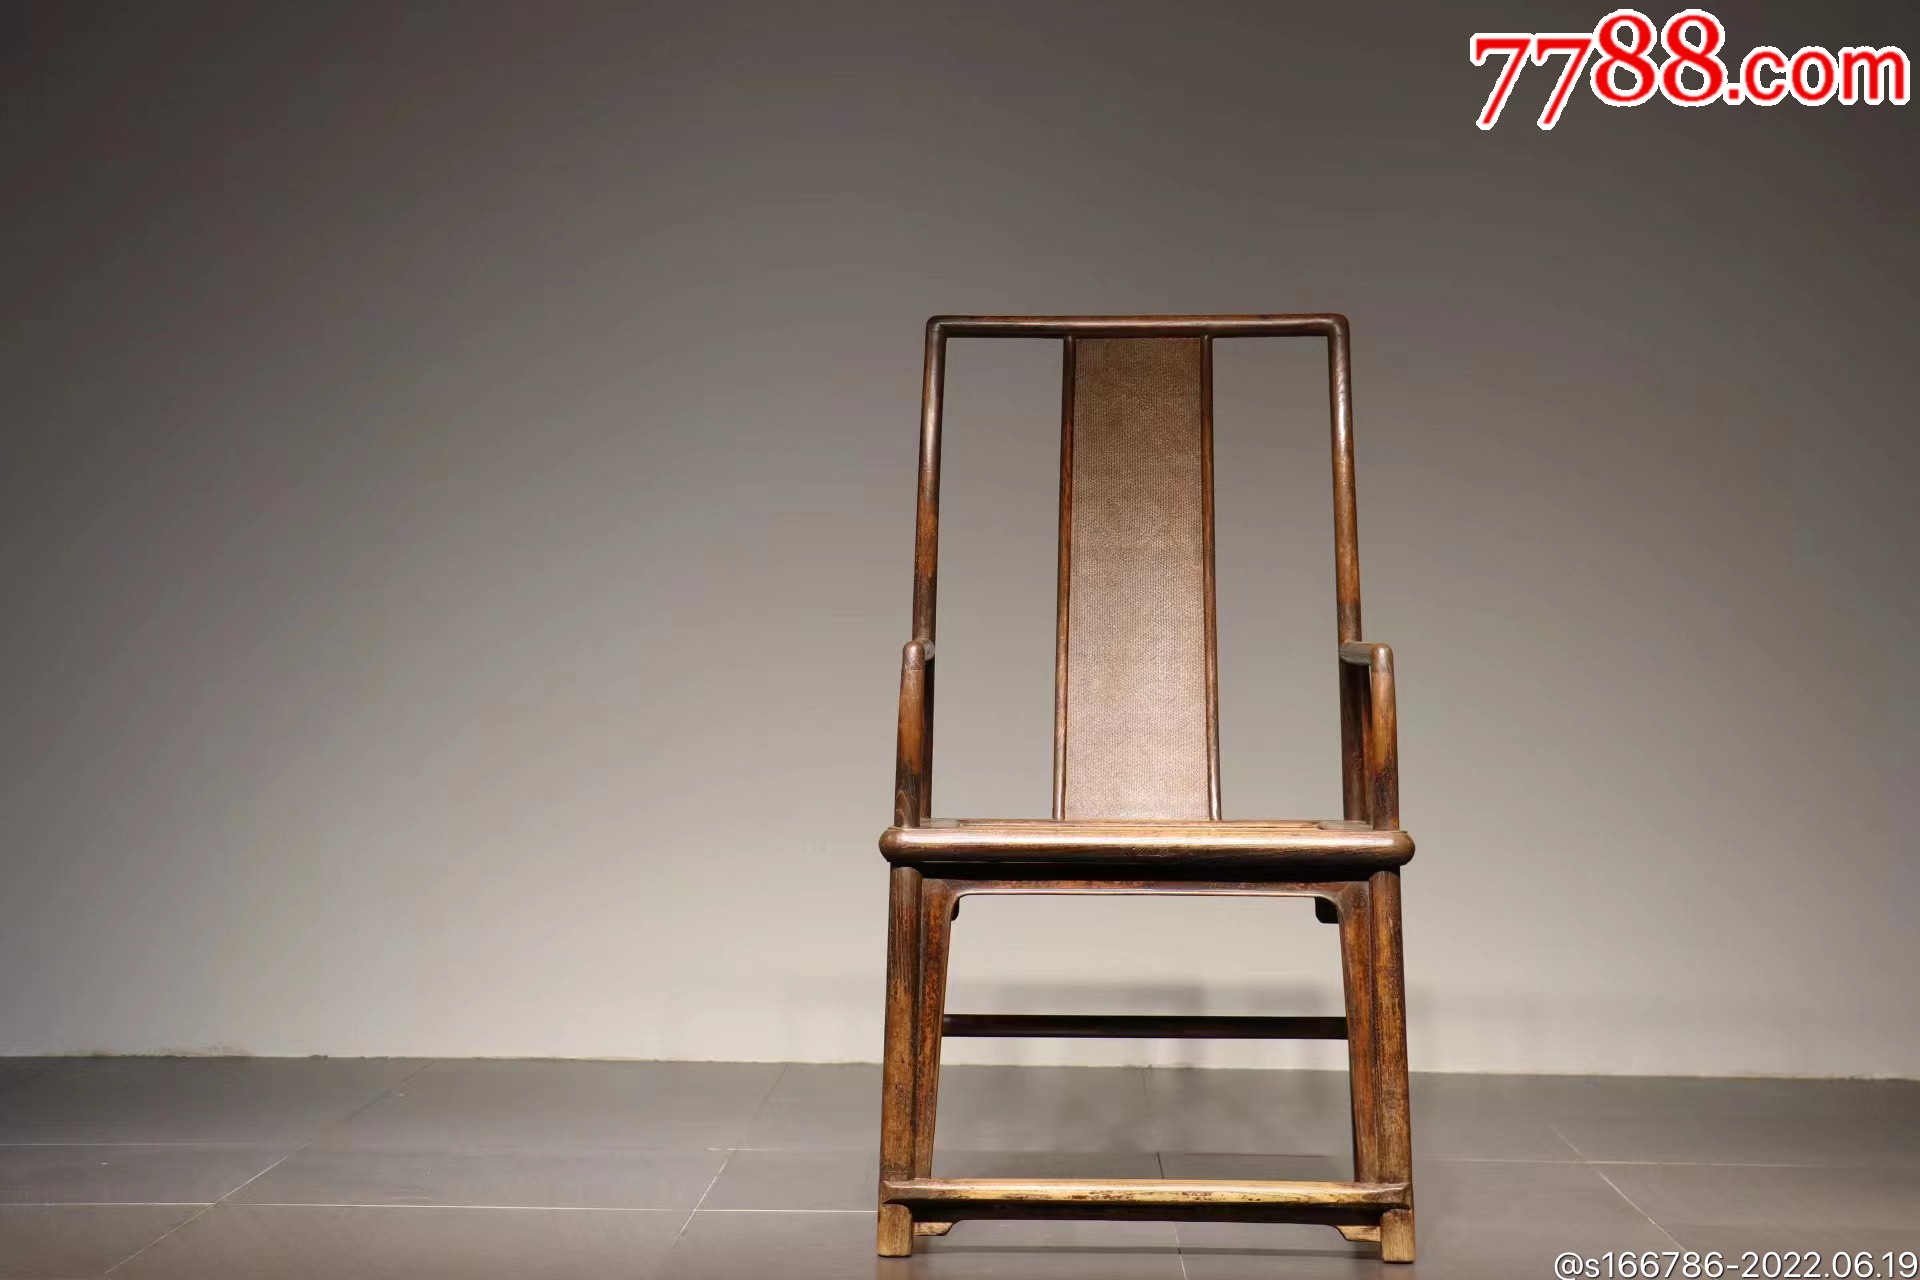 明式官帽椅榆木单制式简练背板弧型帖席面坐面宽大结构简练用弧型曲线